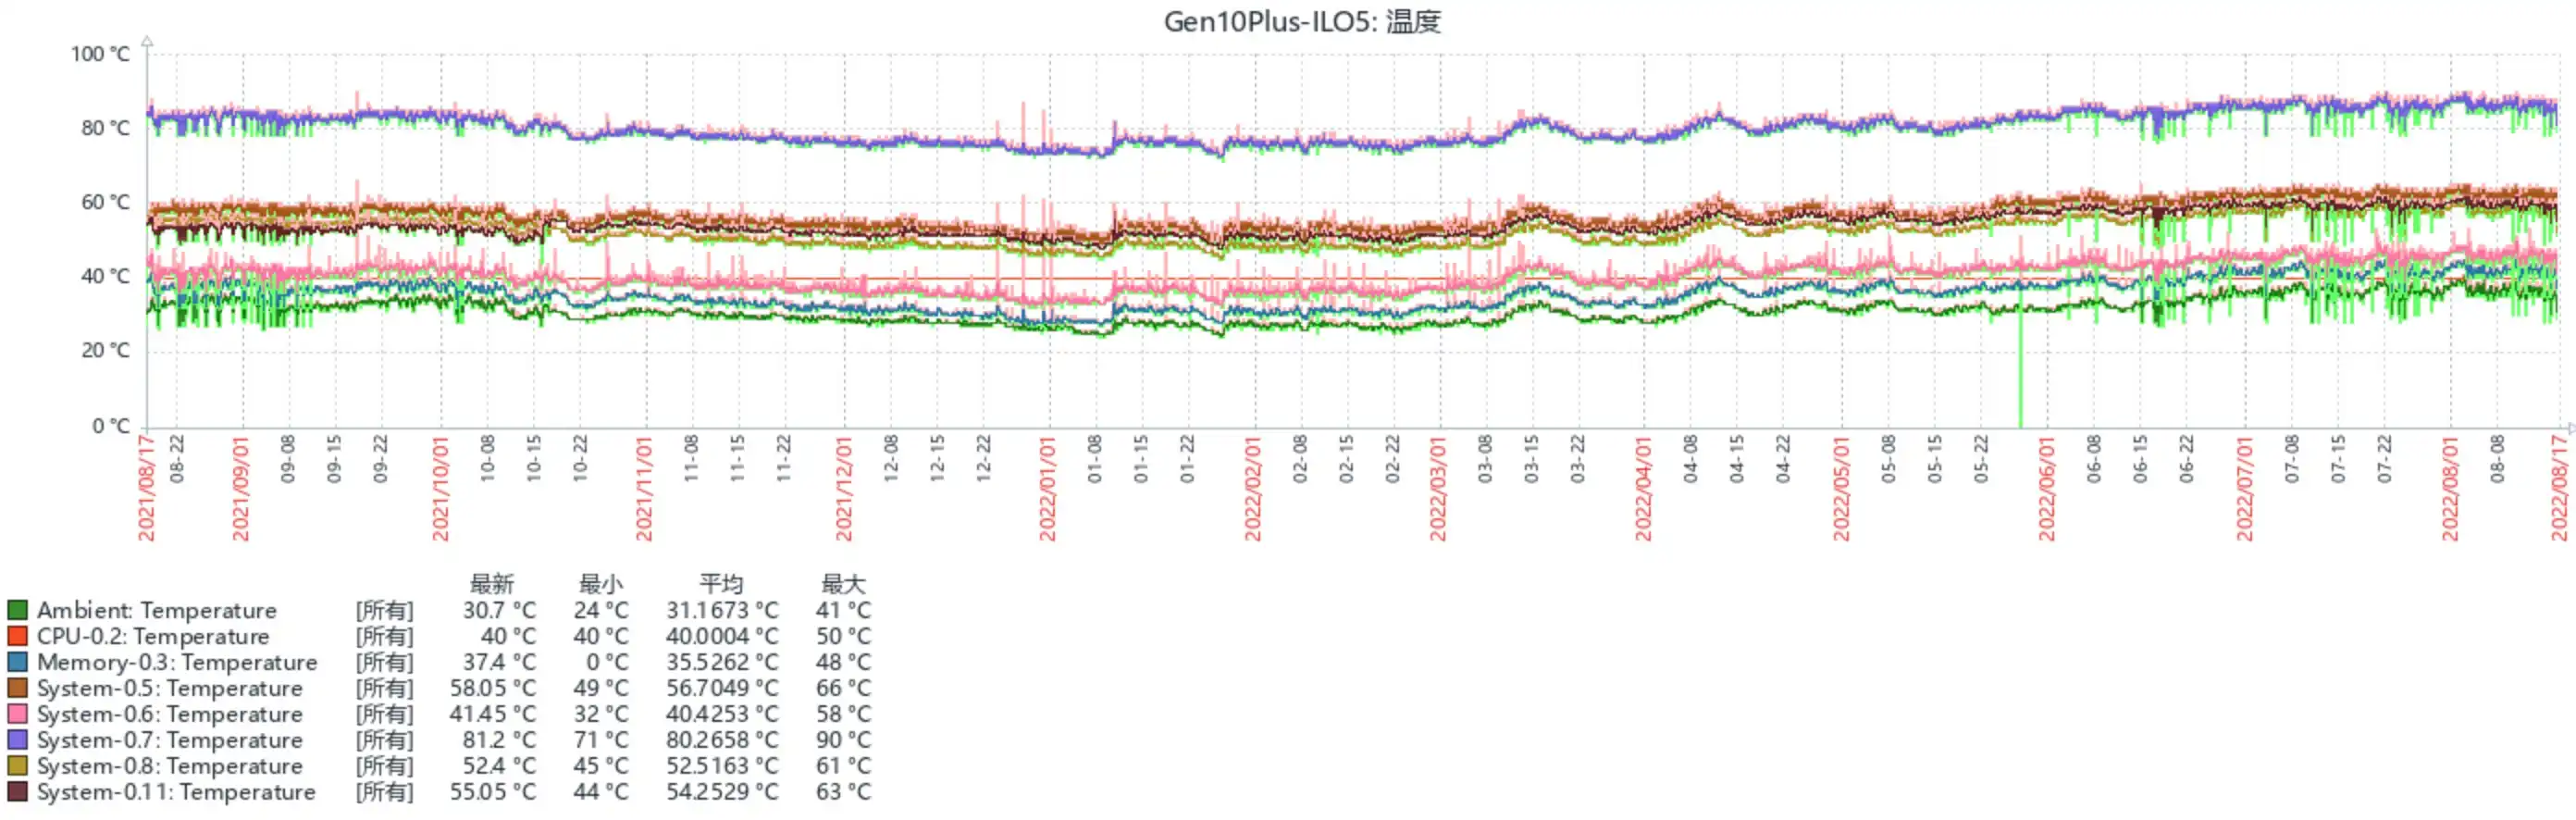 Gen10Plus_Temperature